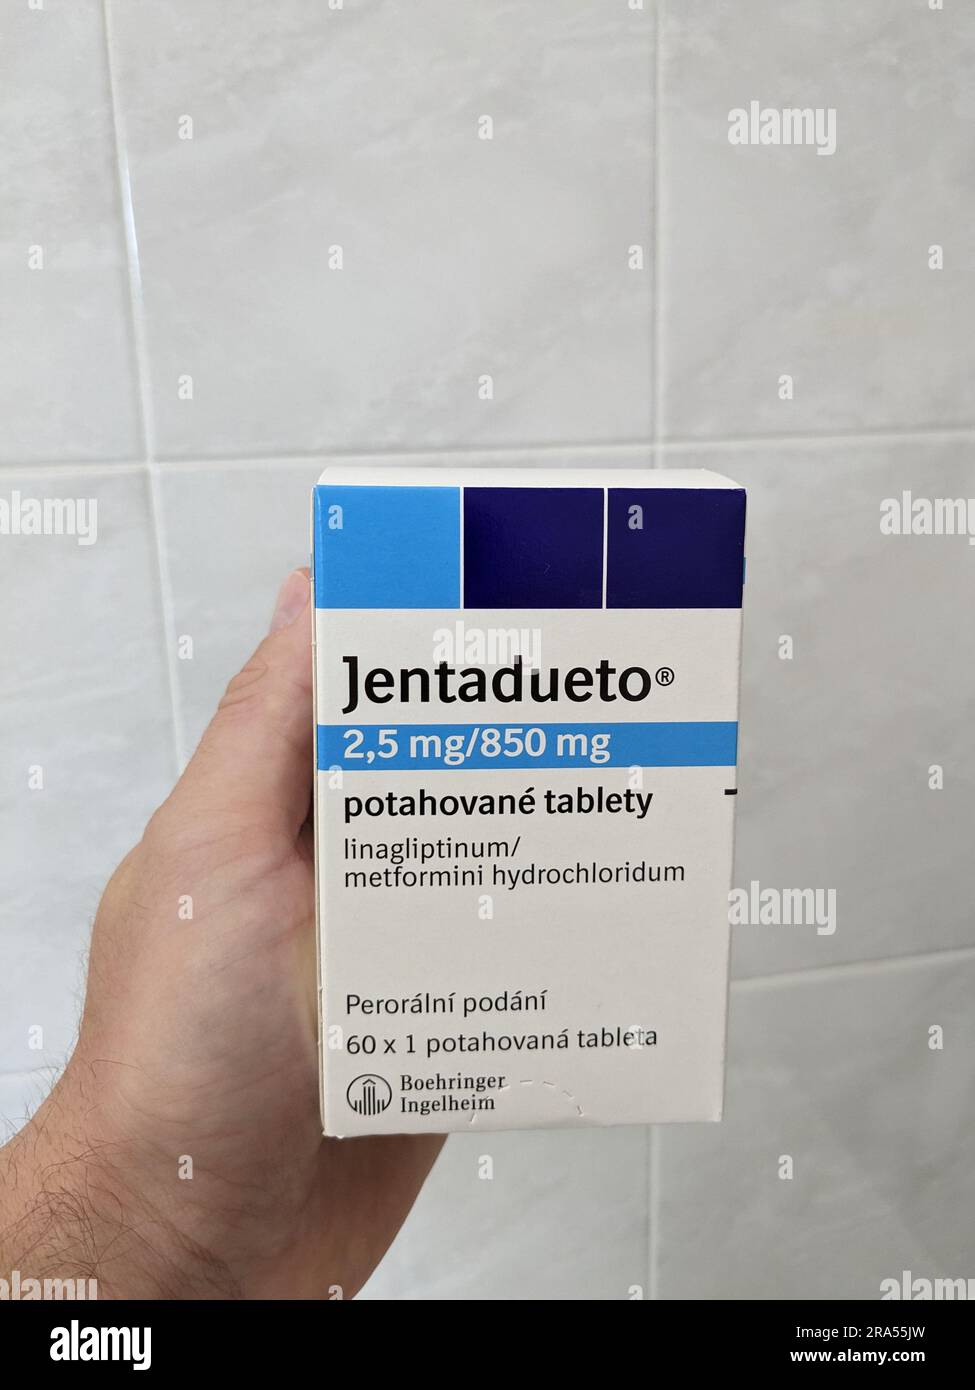 JENTADUETO ist ein verschreibungspflichtiges Arzneimittel, das 2 Diabetes-Arzneimittel, Linagliptin und metformin.can enthält und zusammen mit einer Diät und Bewegung zur Senkung des Blutdrucks angewendet wird Stockfoto